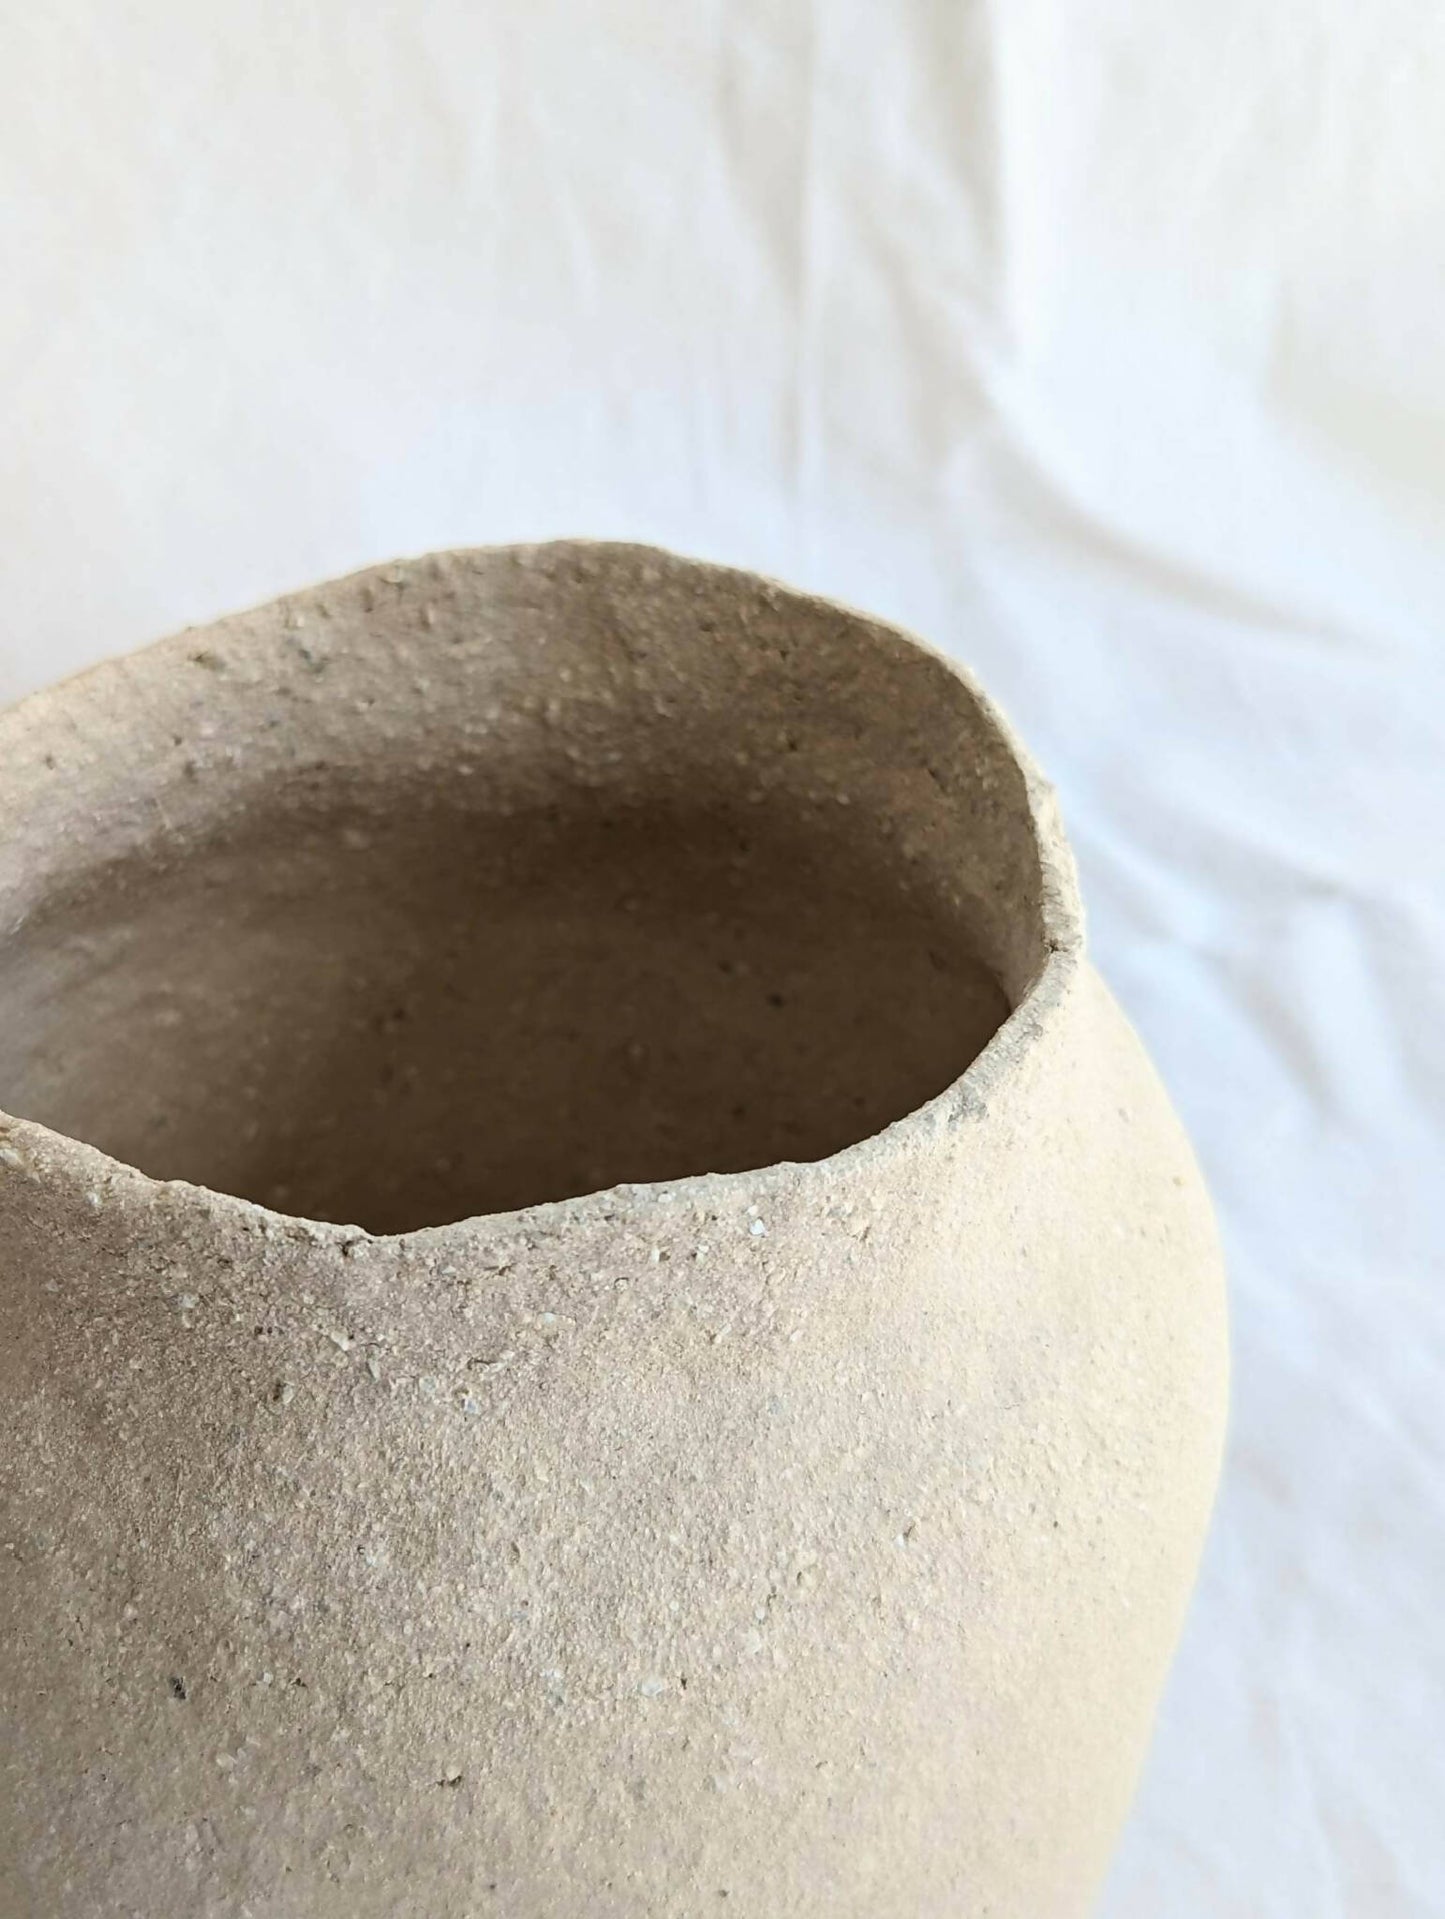 Vase Areia14 ceramique artisanale fait main artisanat francais